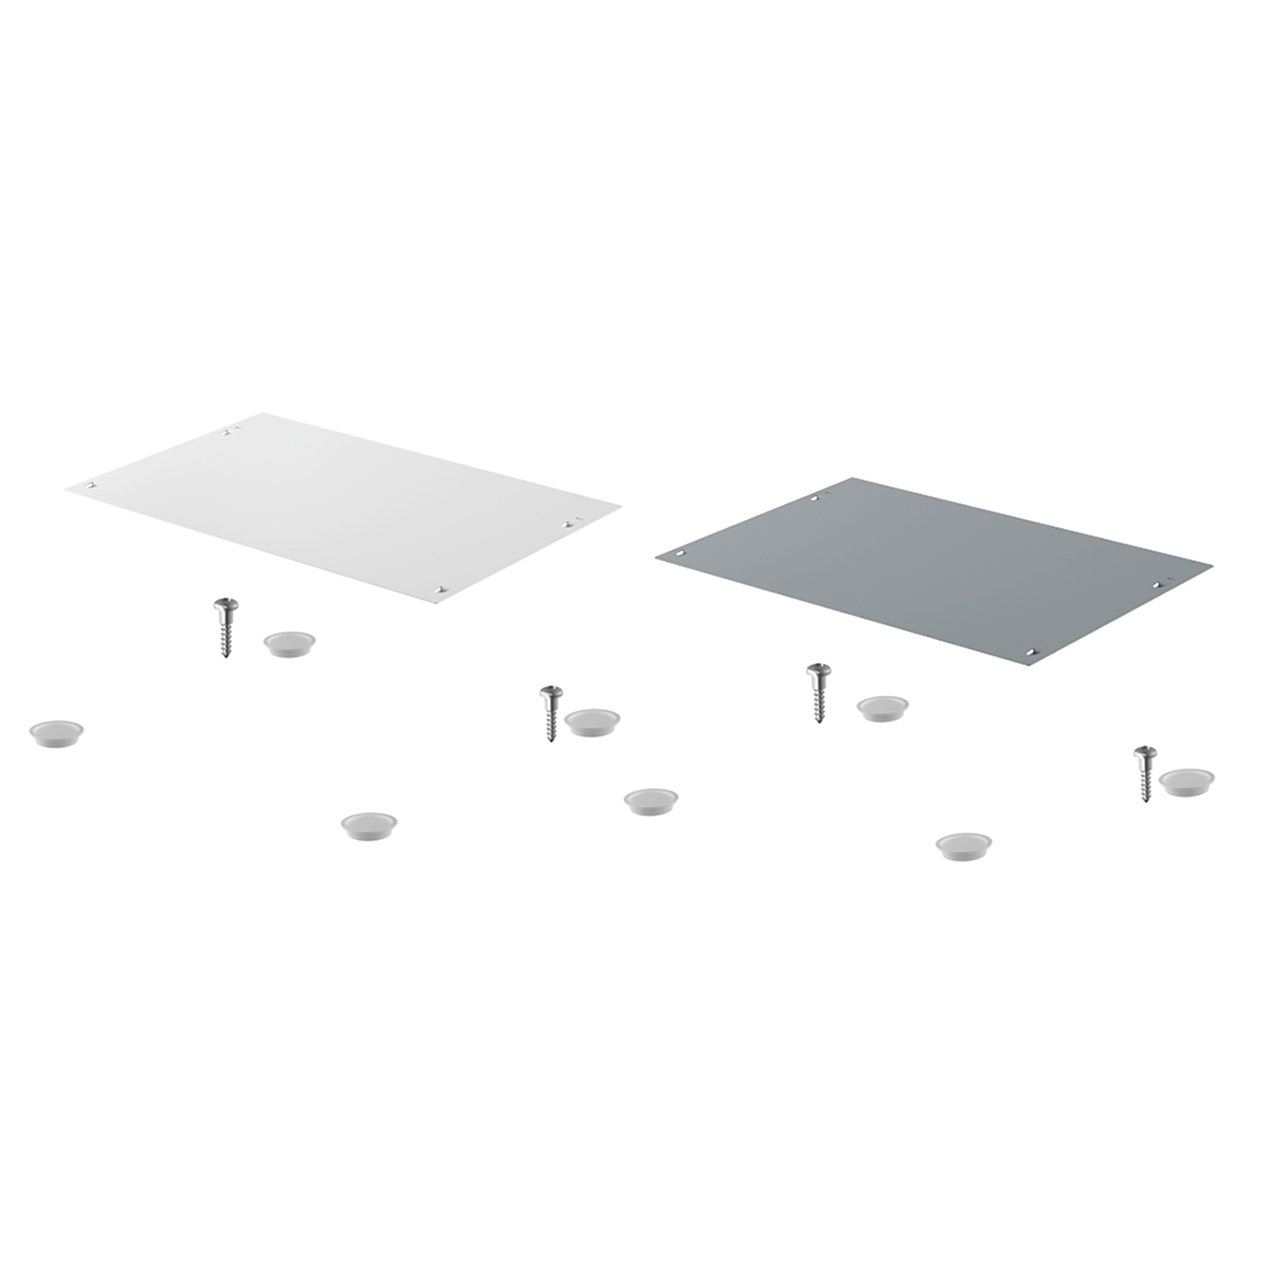 HETTICH Deckel für SmarTray Stahl 75 mm mit Kassette, weiß, 9208310